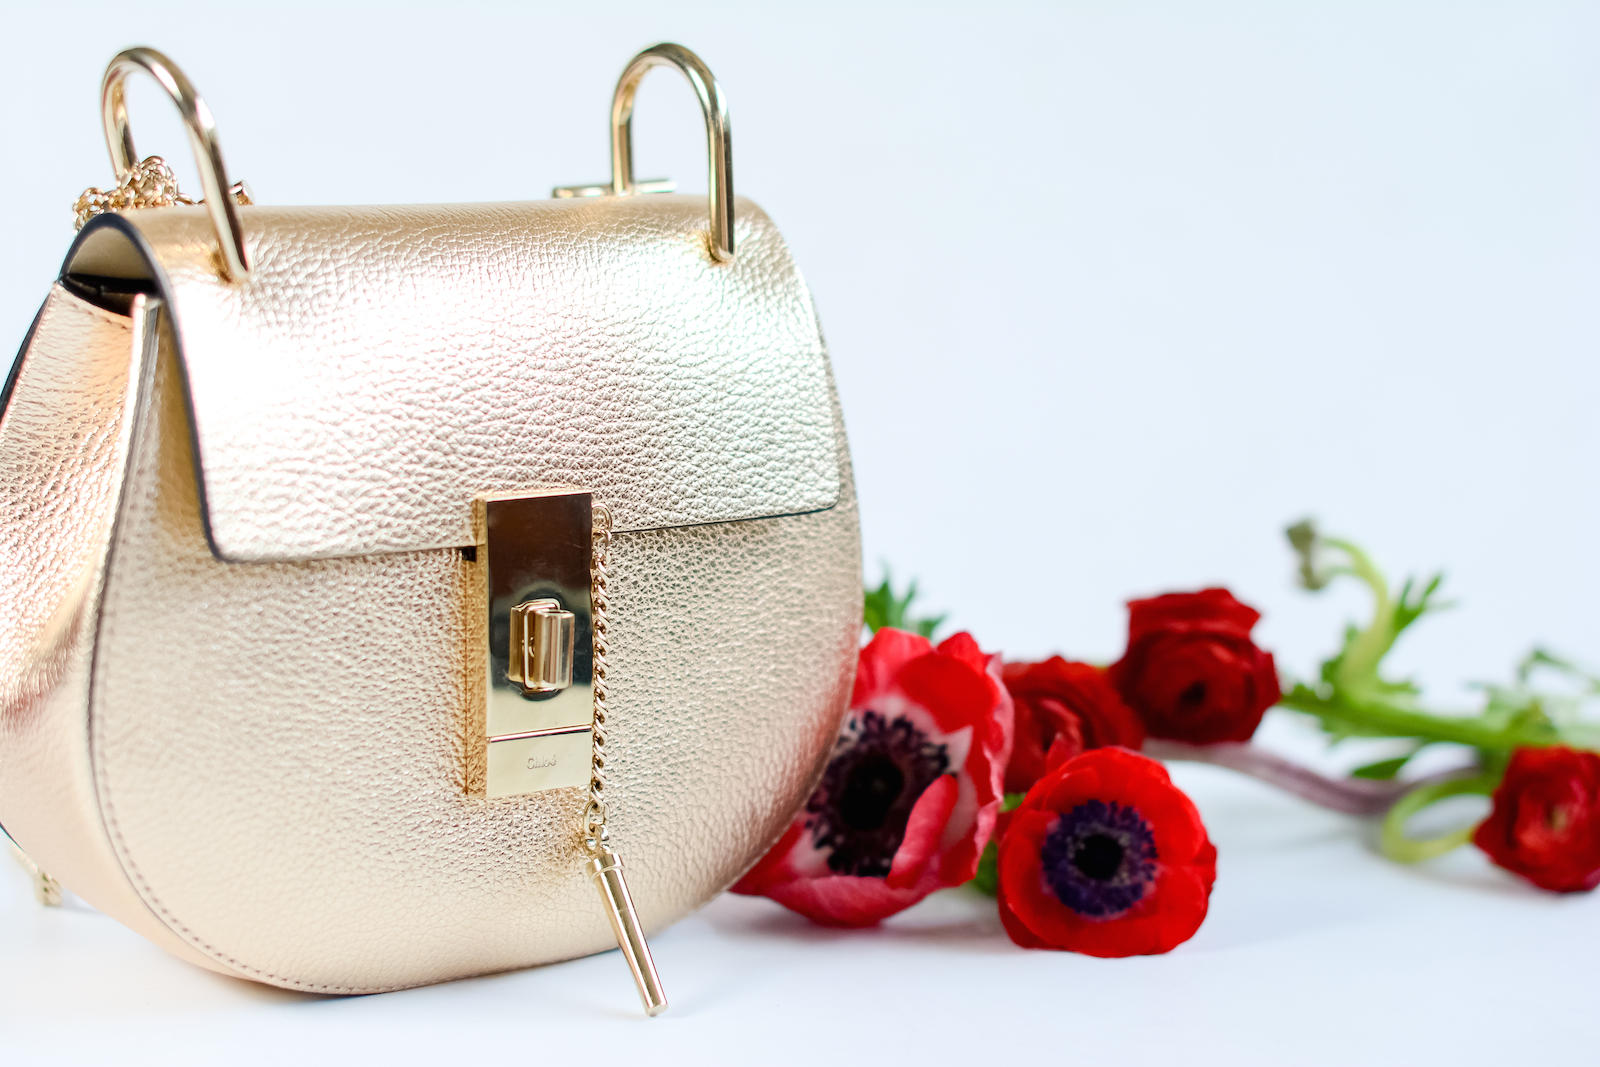 Chloé Drew Mini Bag in Pale Gold